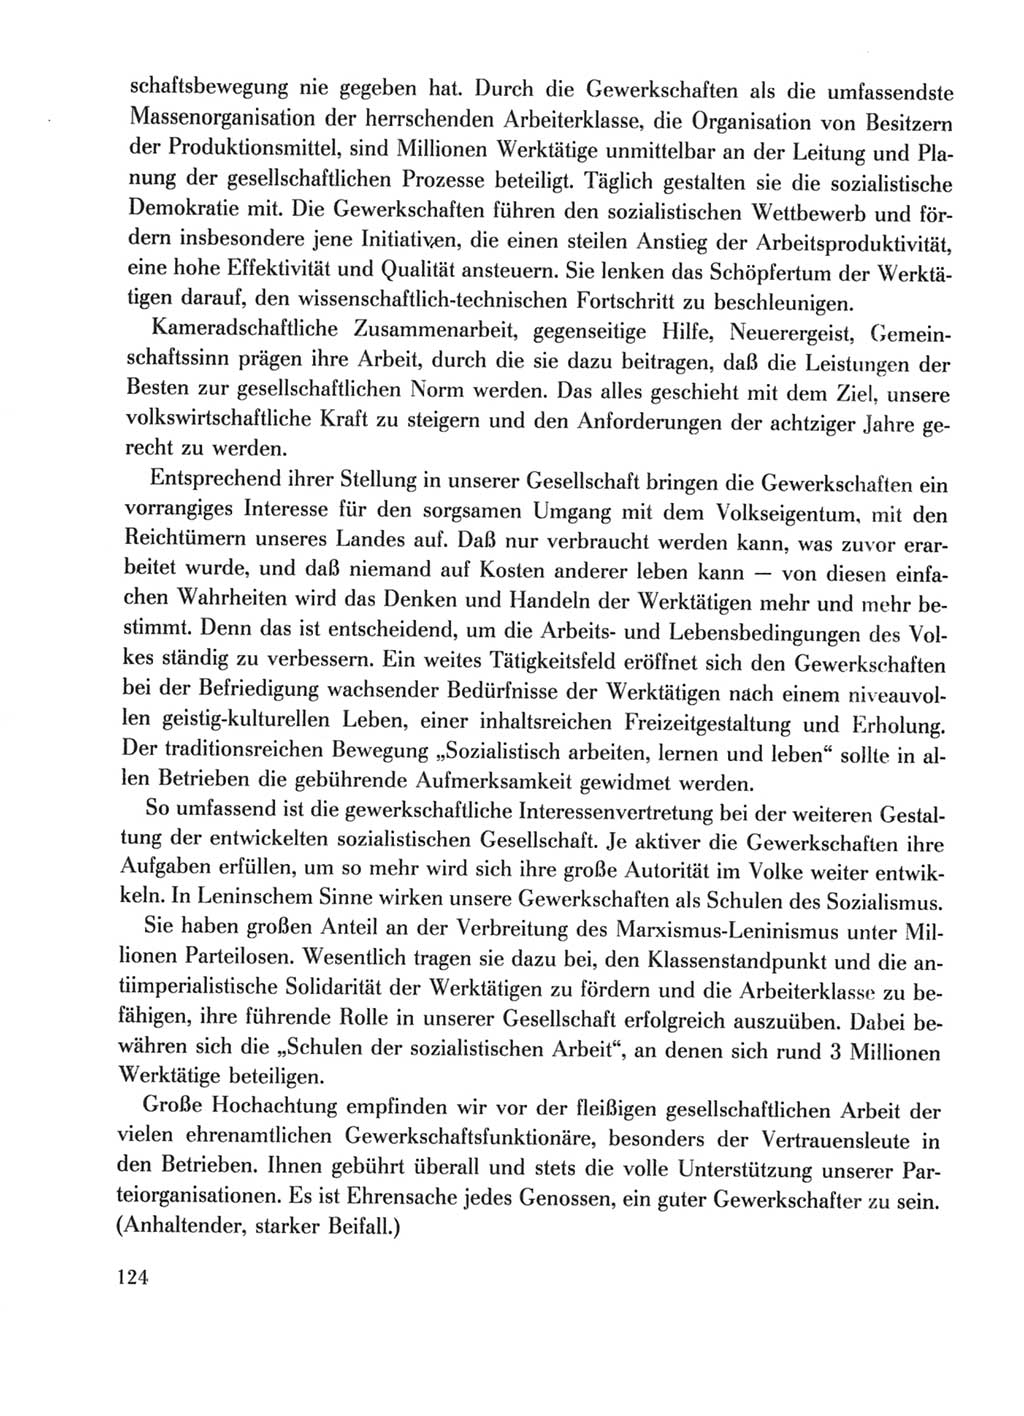 Protokoll der Verhandlungen des Ⅹ. Parteitages der Sozialistischen Einheitspartei Deutschlands (SED) [Deutsche Demokratische Republik (DDR)] 1981, Band 1, Seite 124 (Prot. Verh. Ⅹ. PT SED DDR 1981, Bd. 1, S. 124)